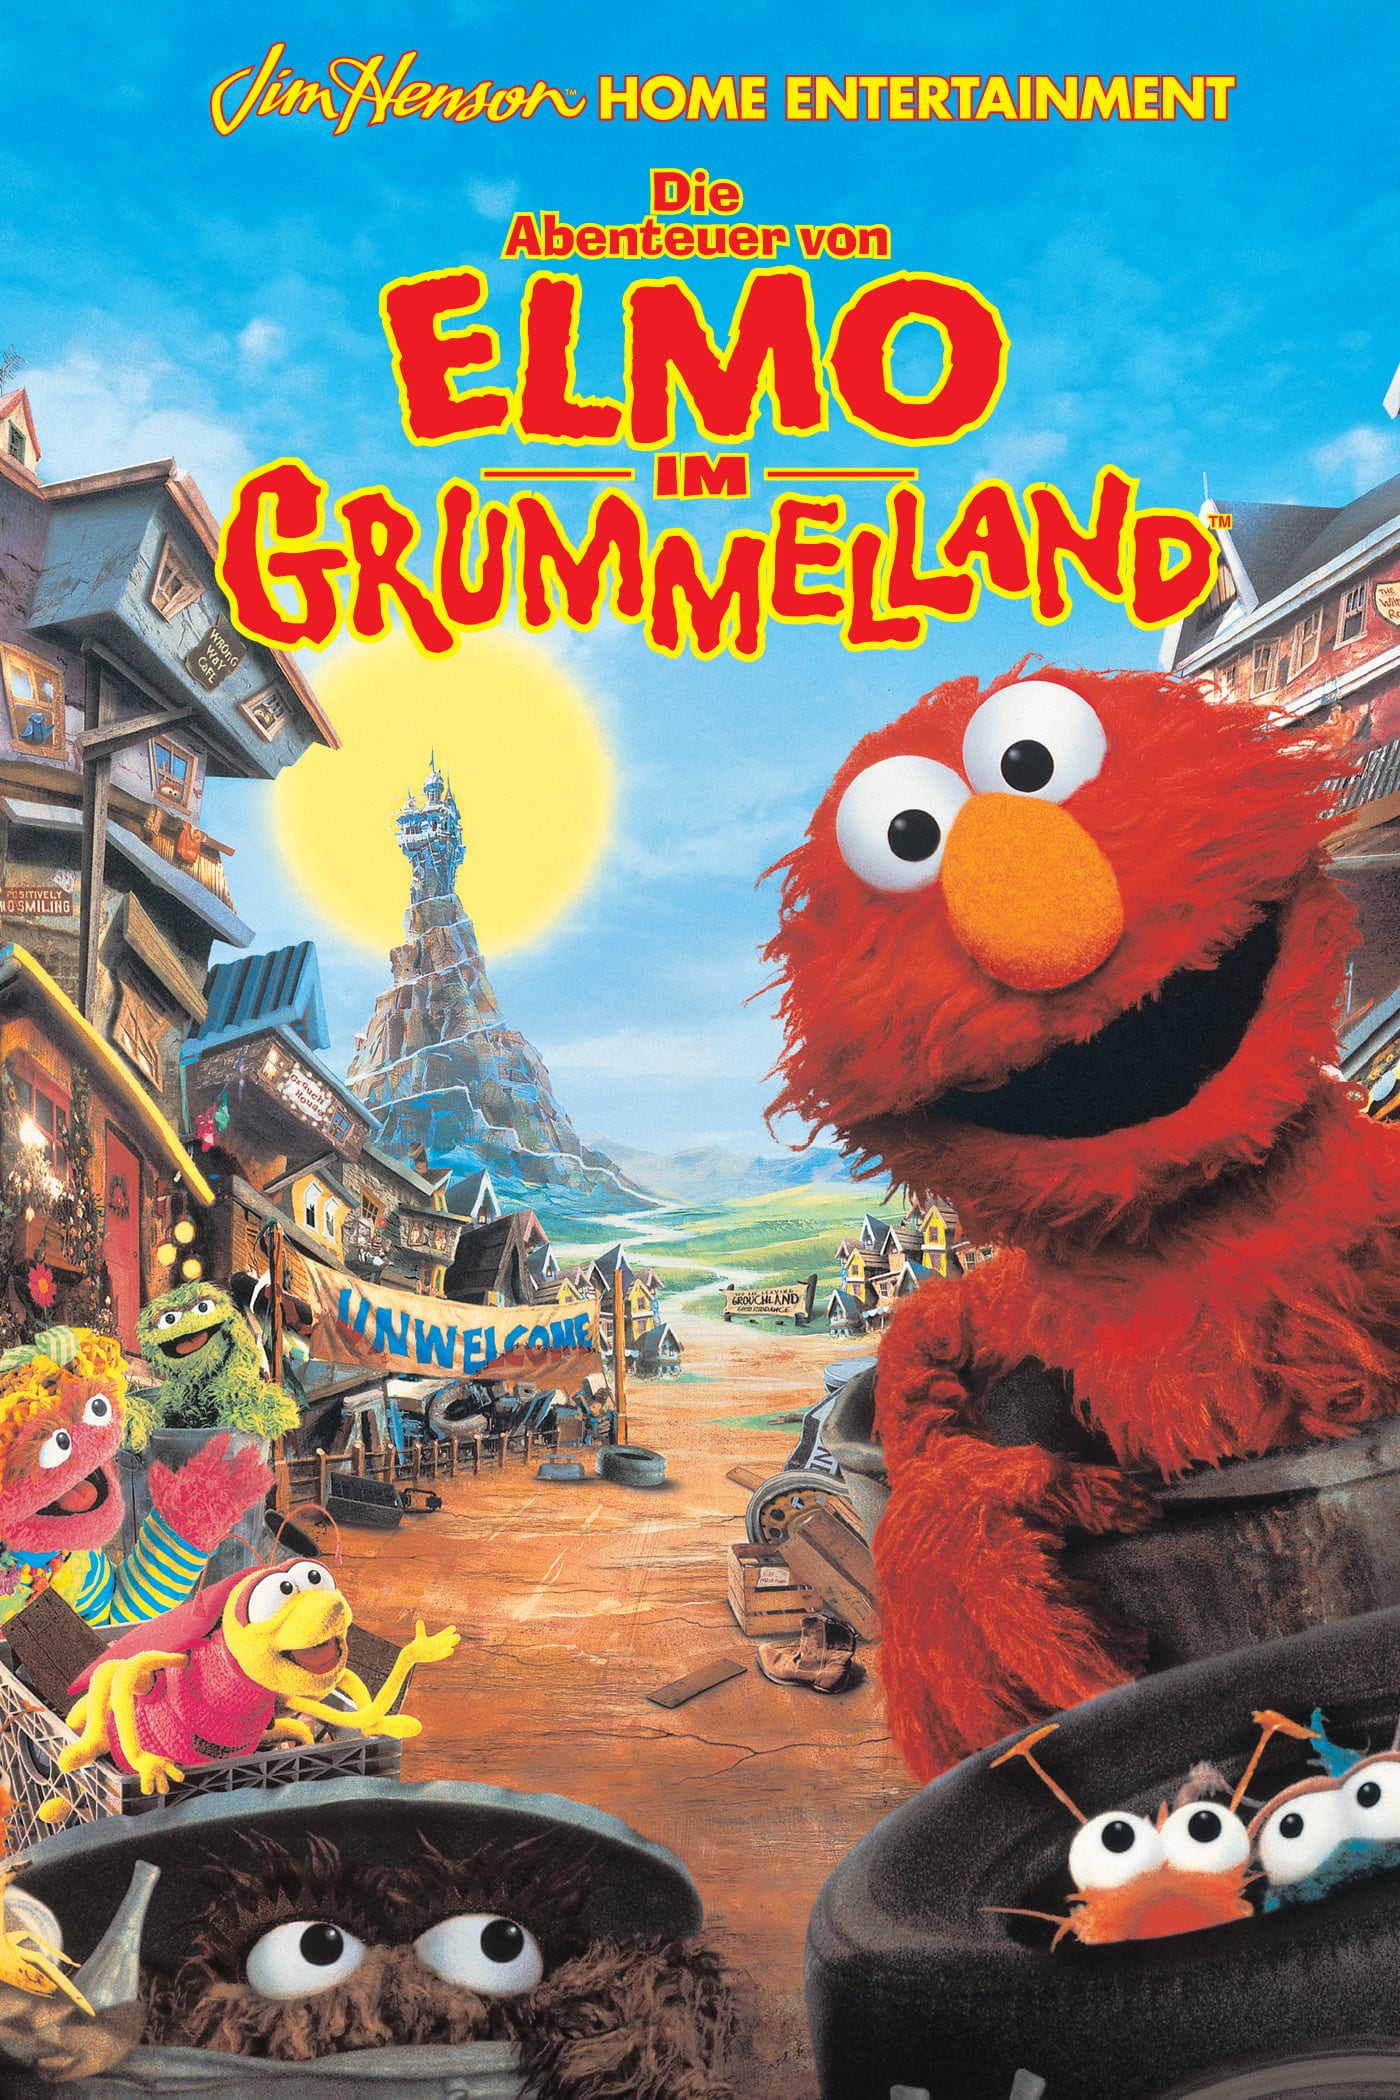 Plakat von "Die Abenteuer von Elmo im Grummelland"